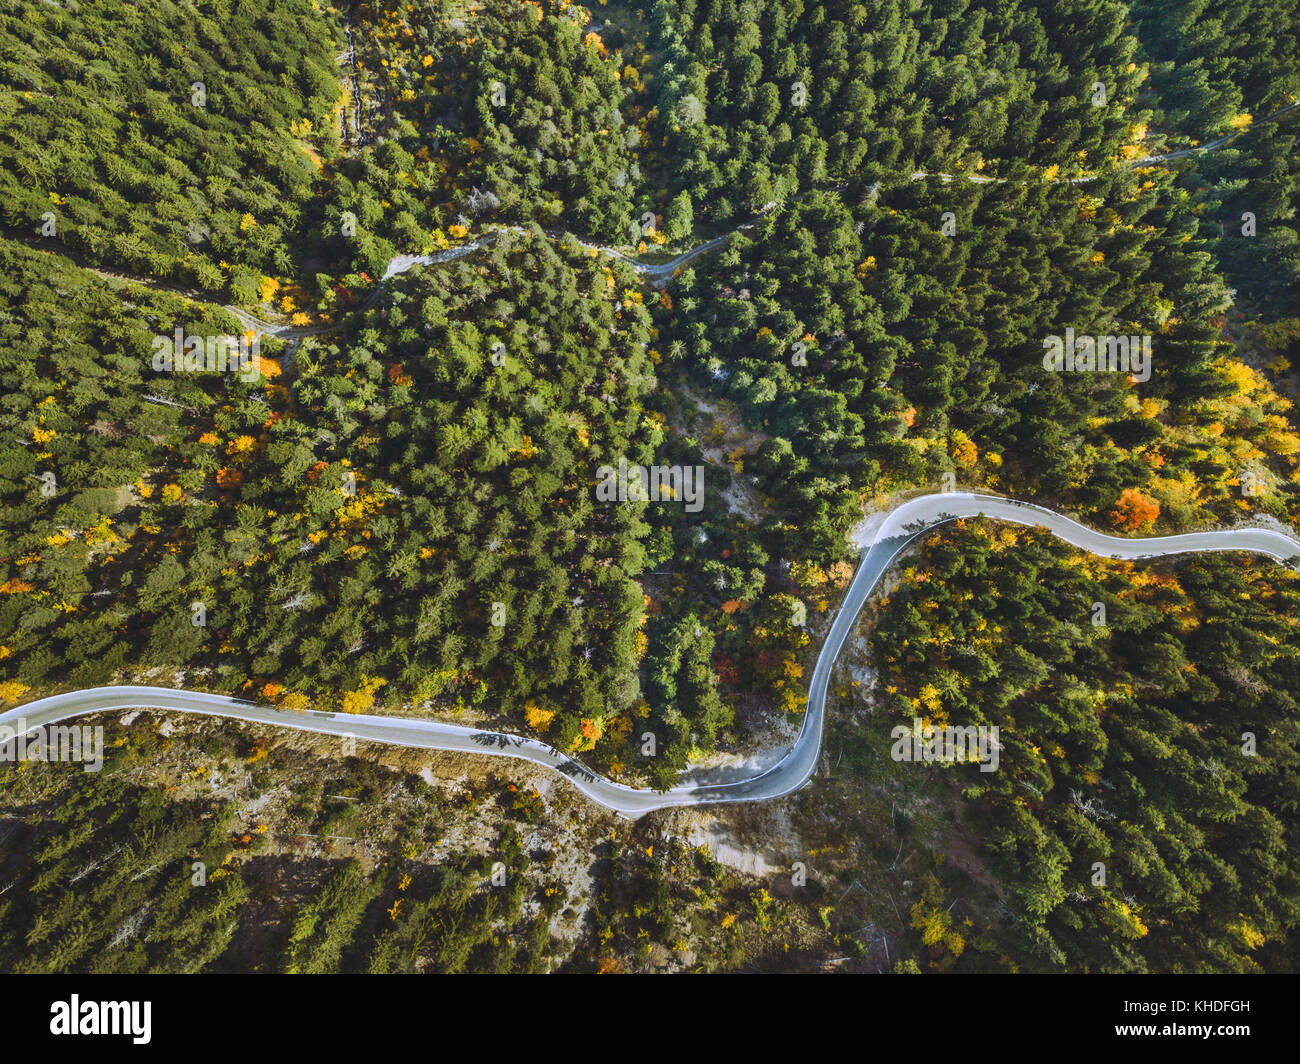 Paysage aérien de route sinueuse dans la forêt, belle vue sur la serpentine de drone Banque D'Images